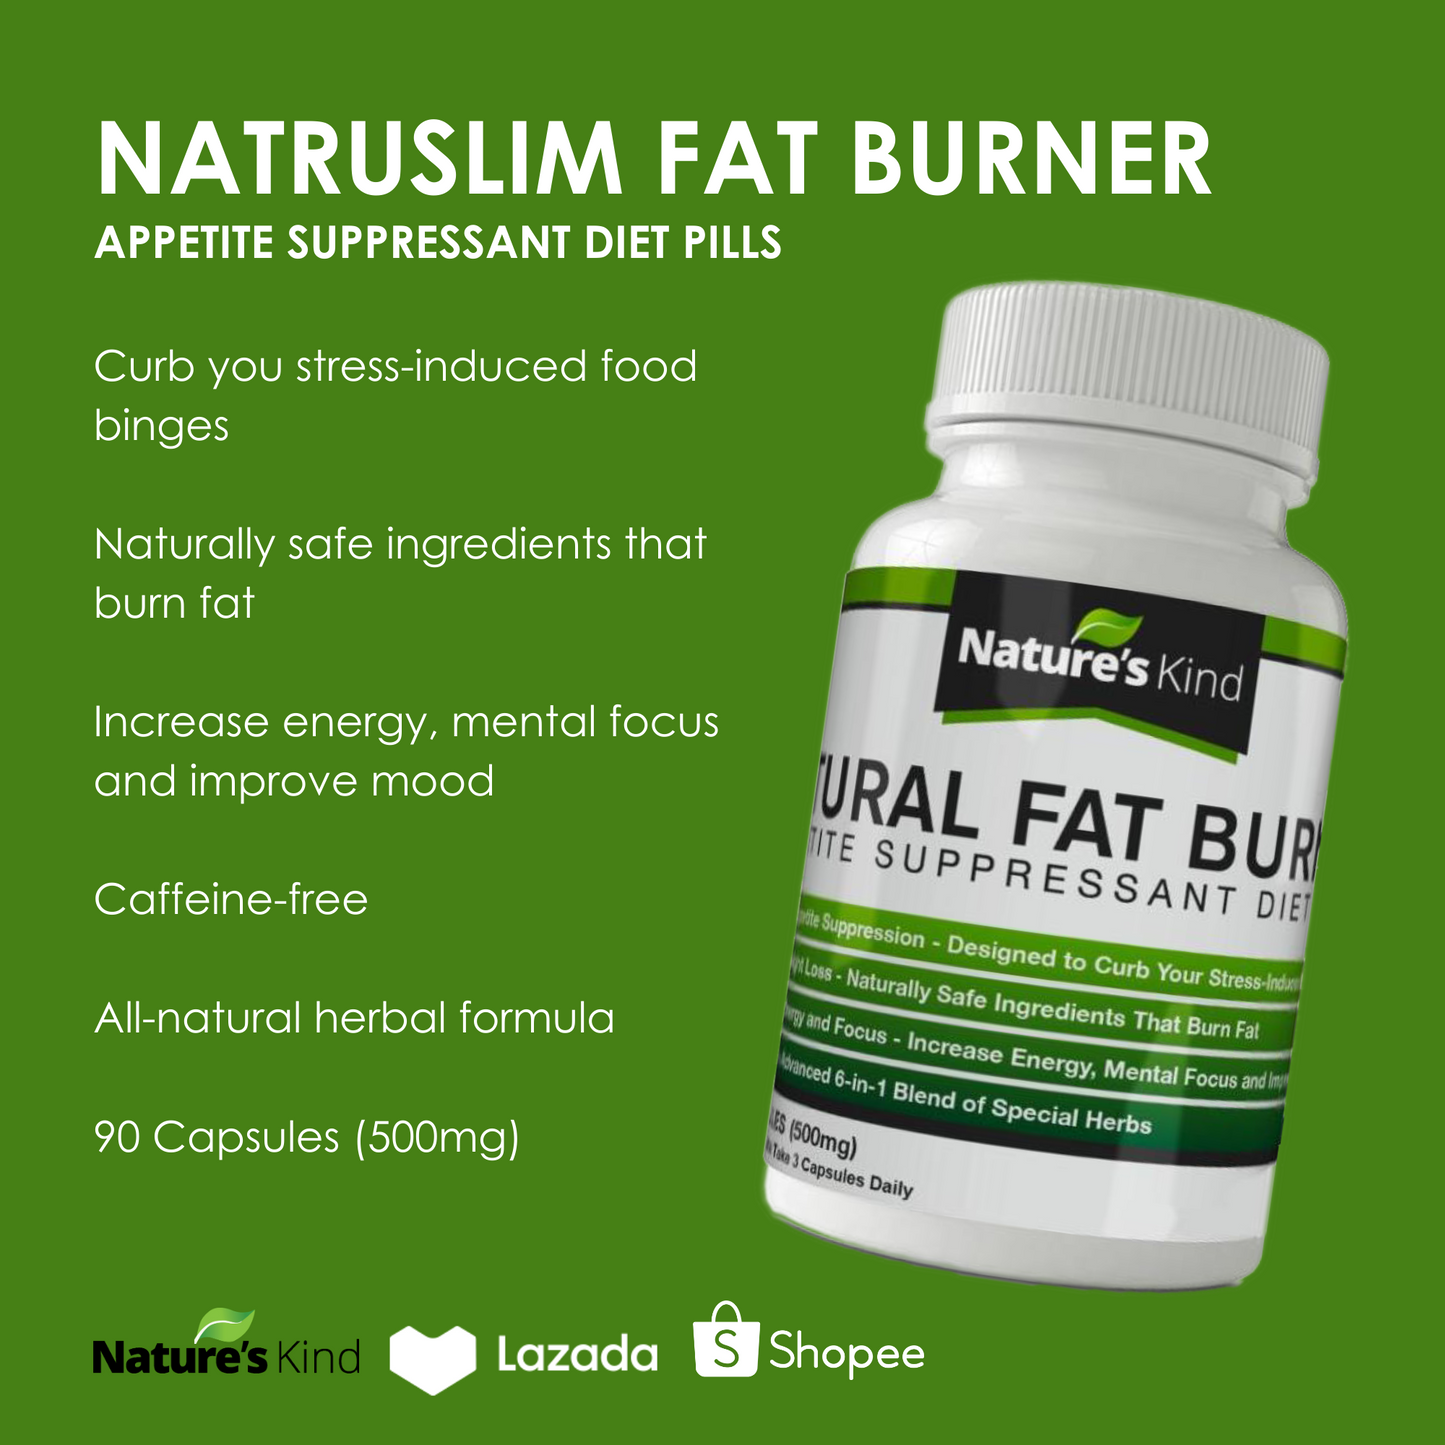 NatruSlim Fat Burner and Slimming Capsules